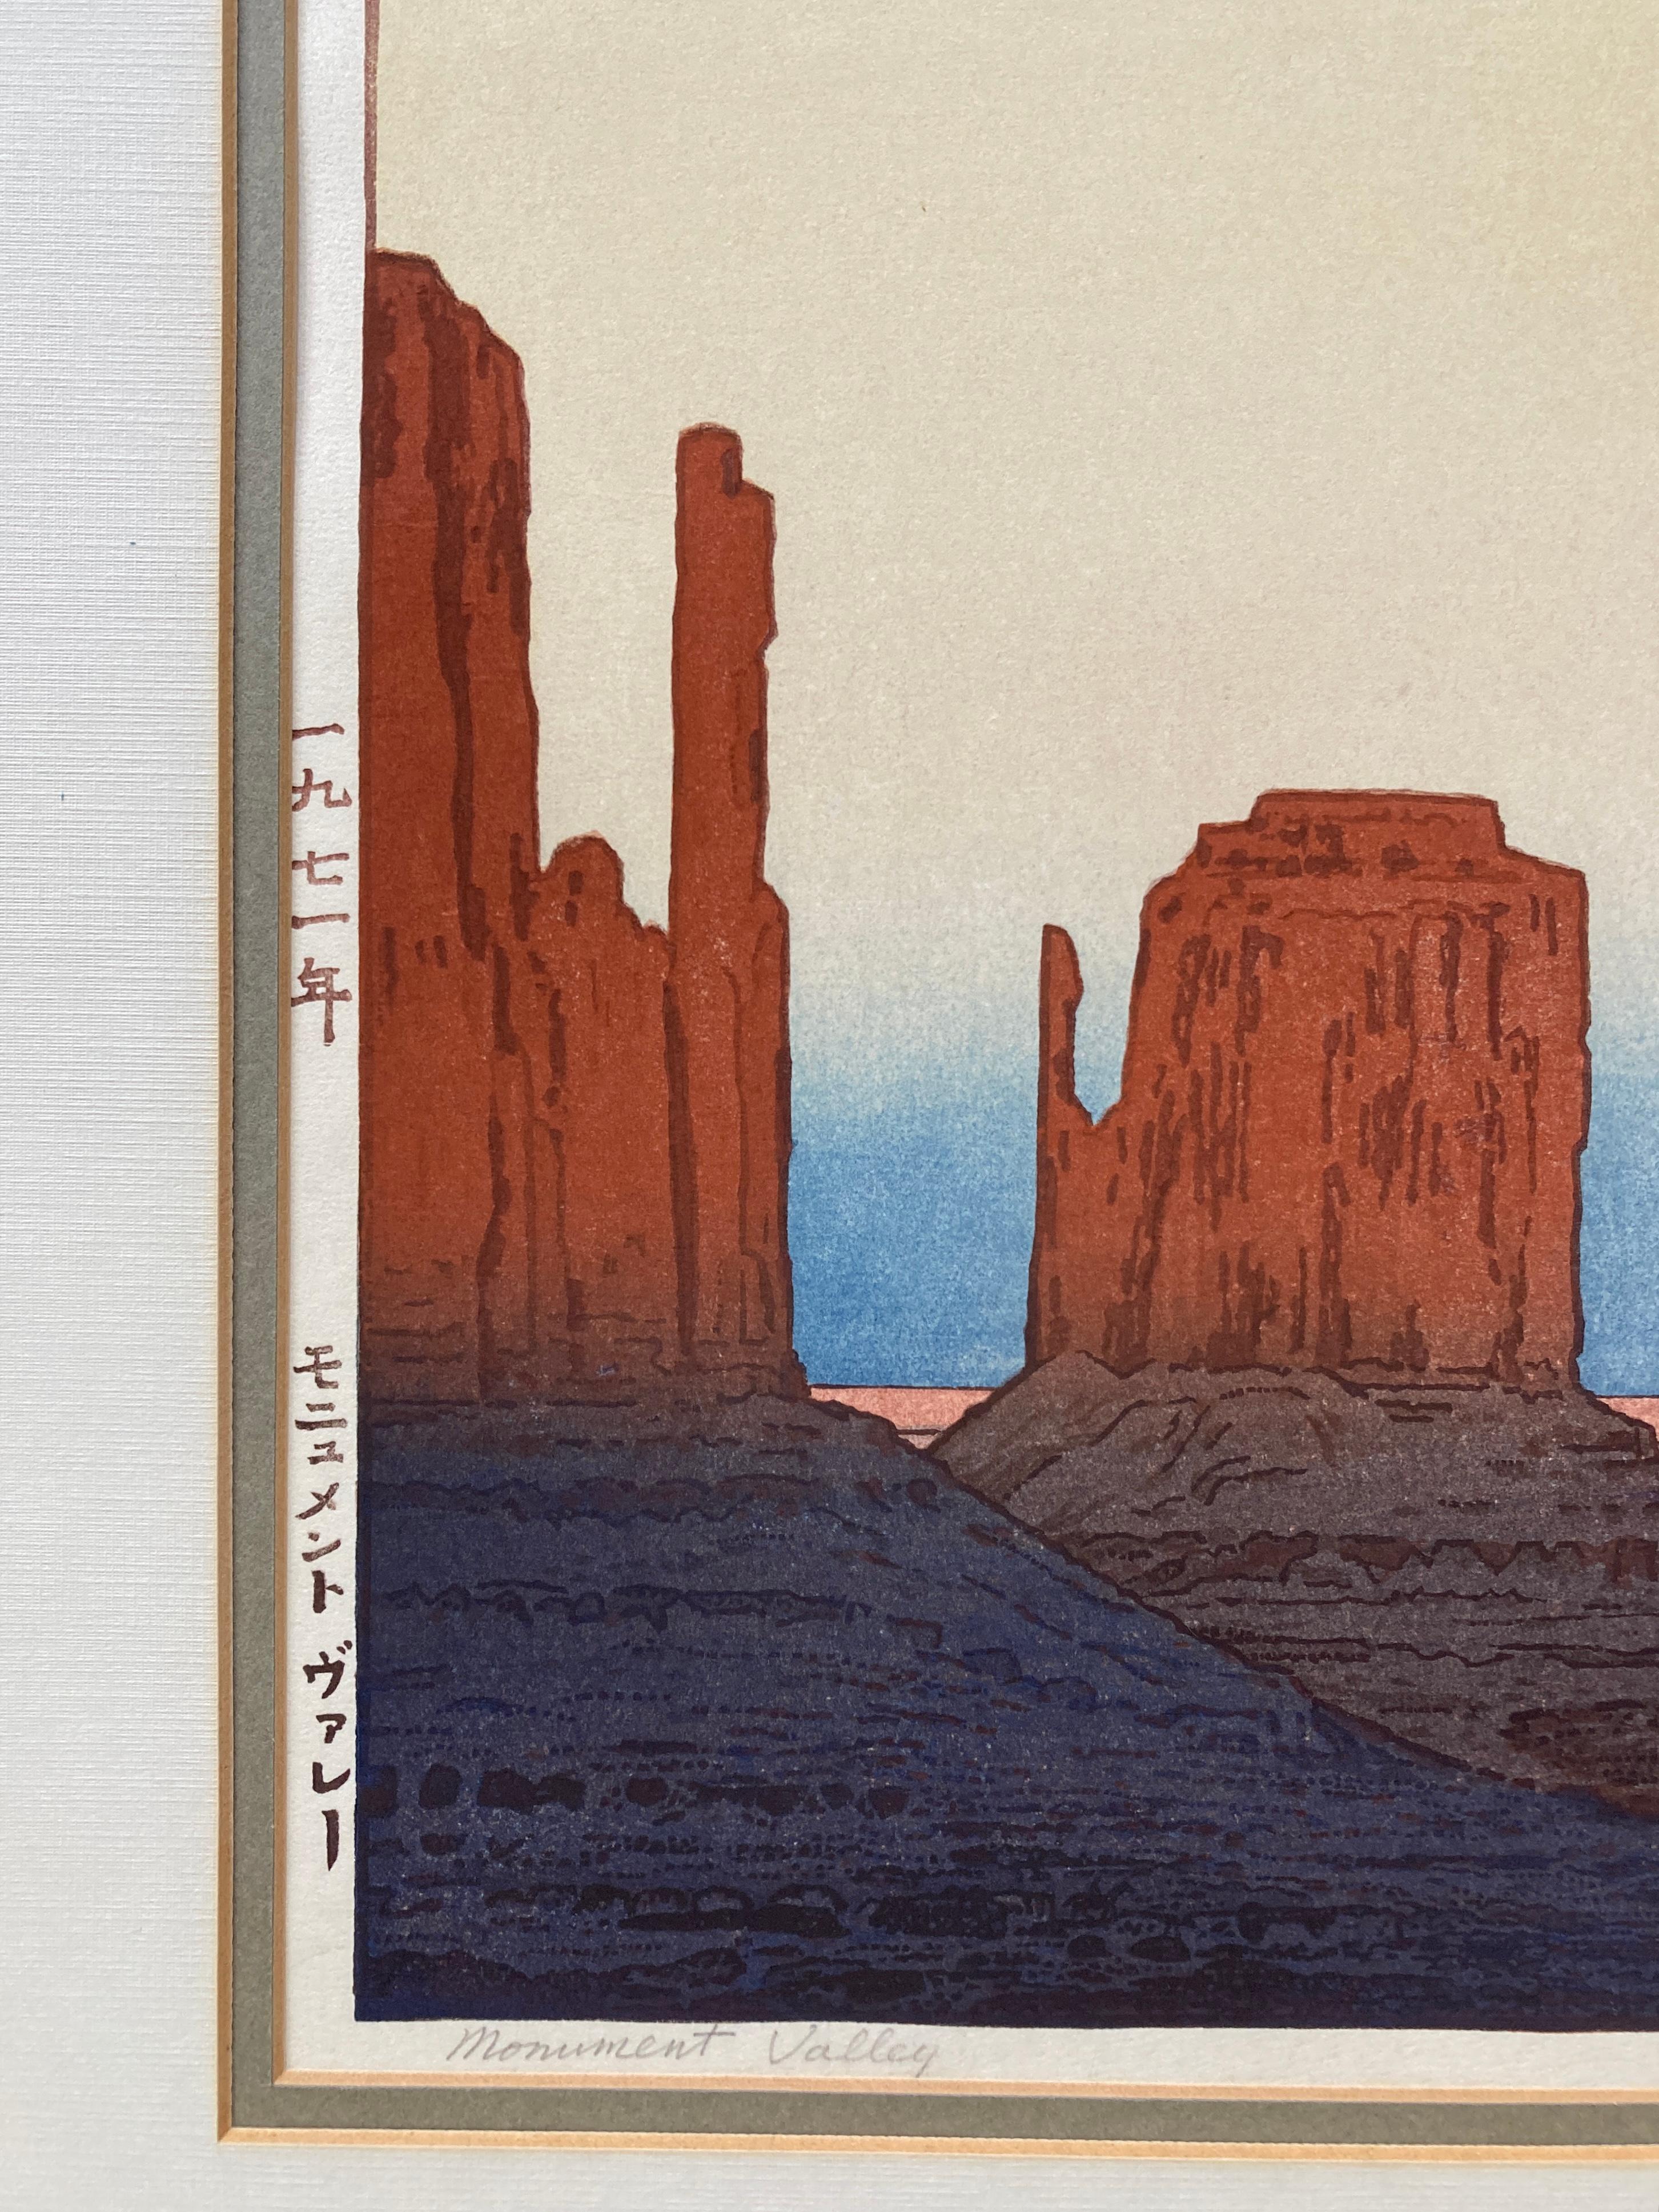 Toshi Yoshida 'Monument Valley' Woodblock Print, 1971 4